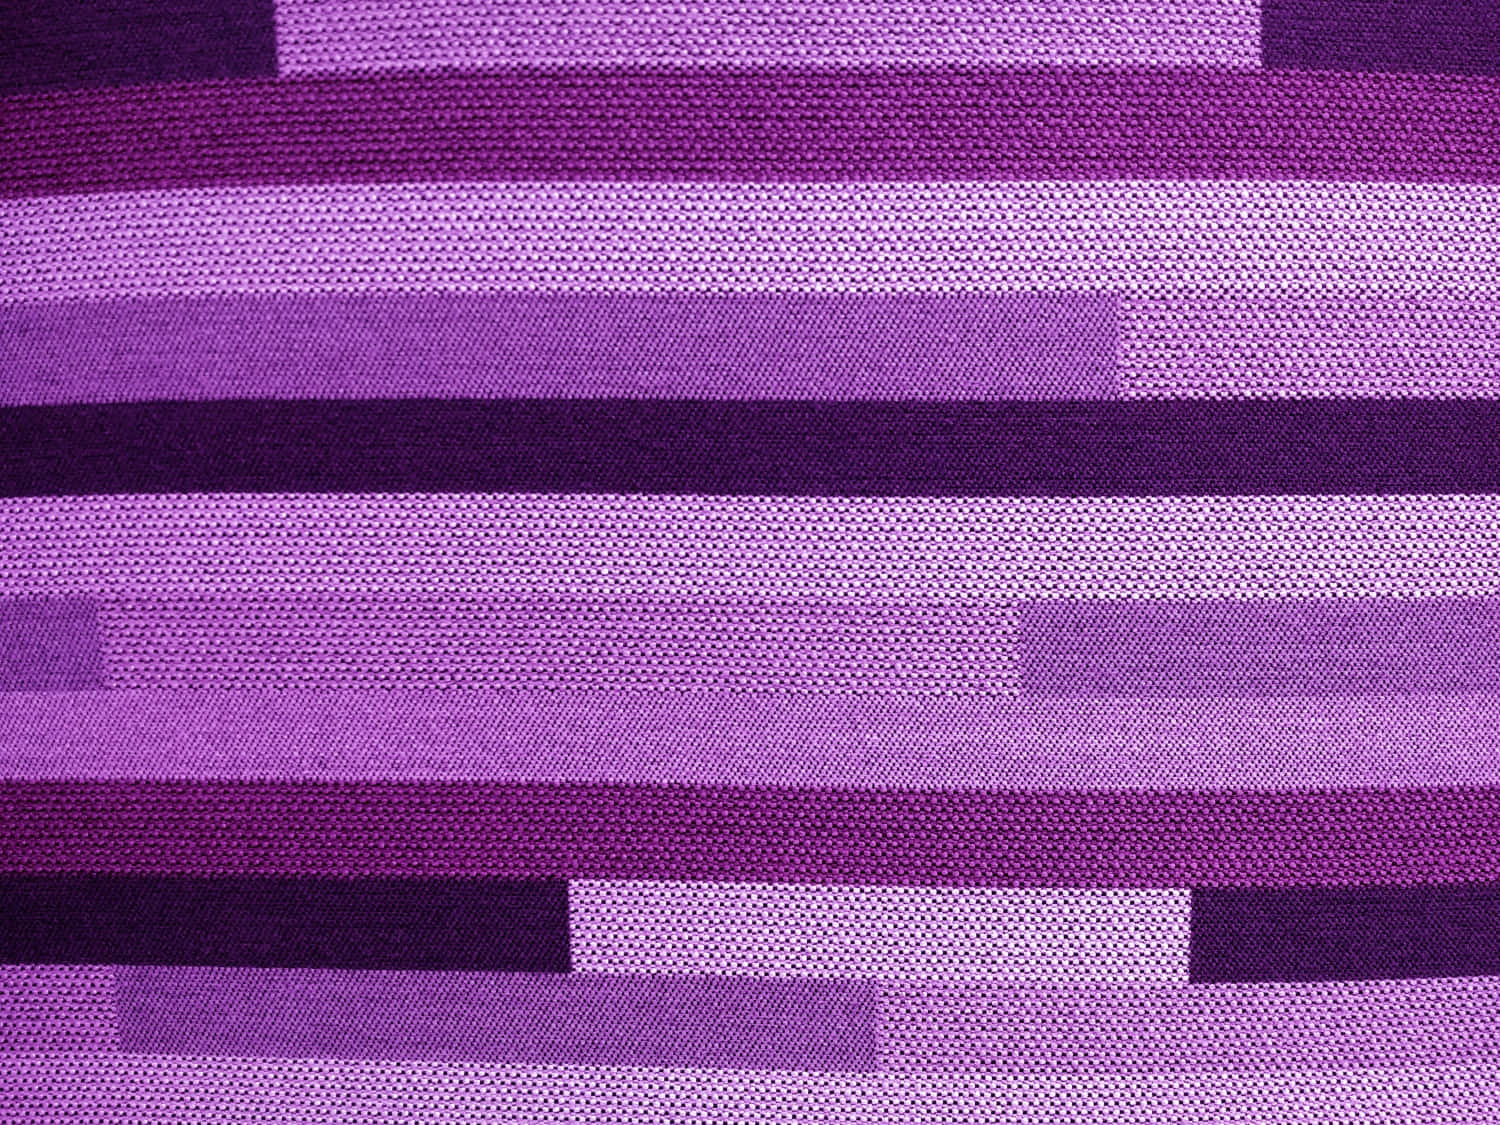 Stofftexturbilder Violette Streifen